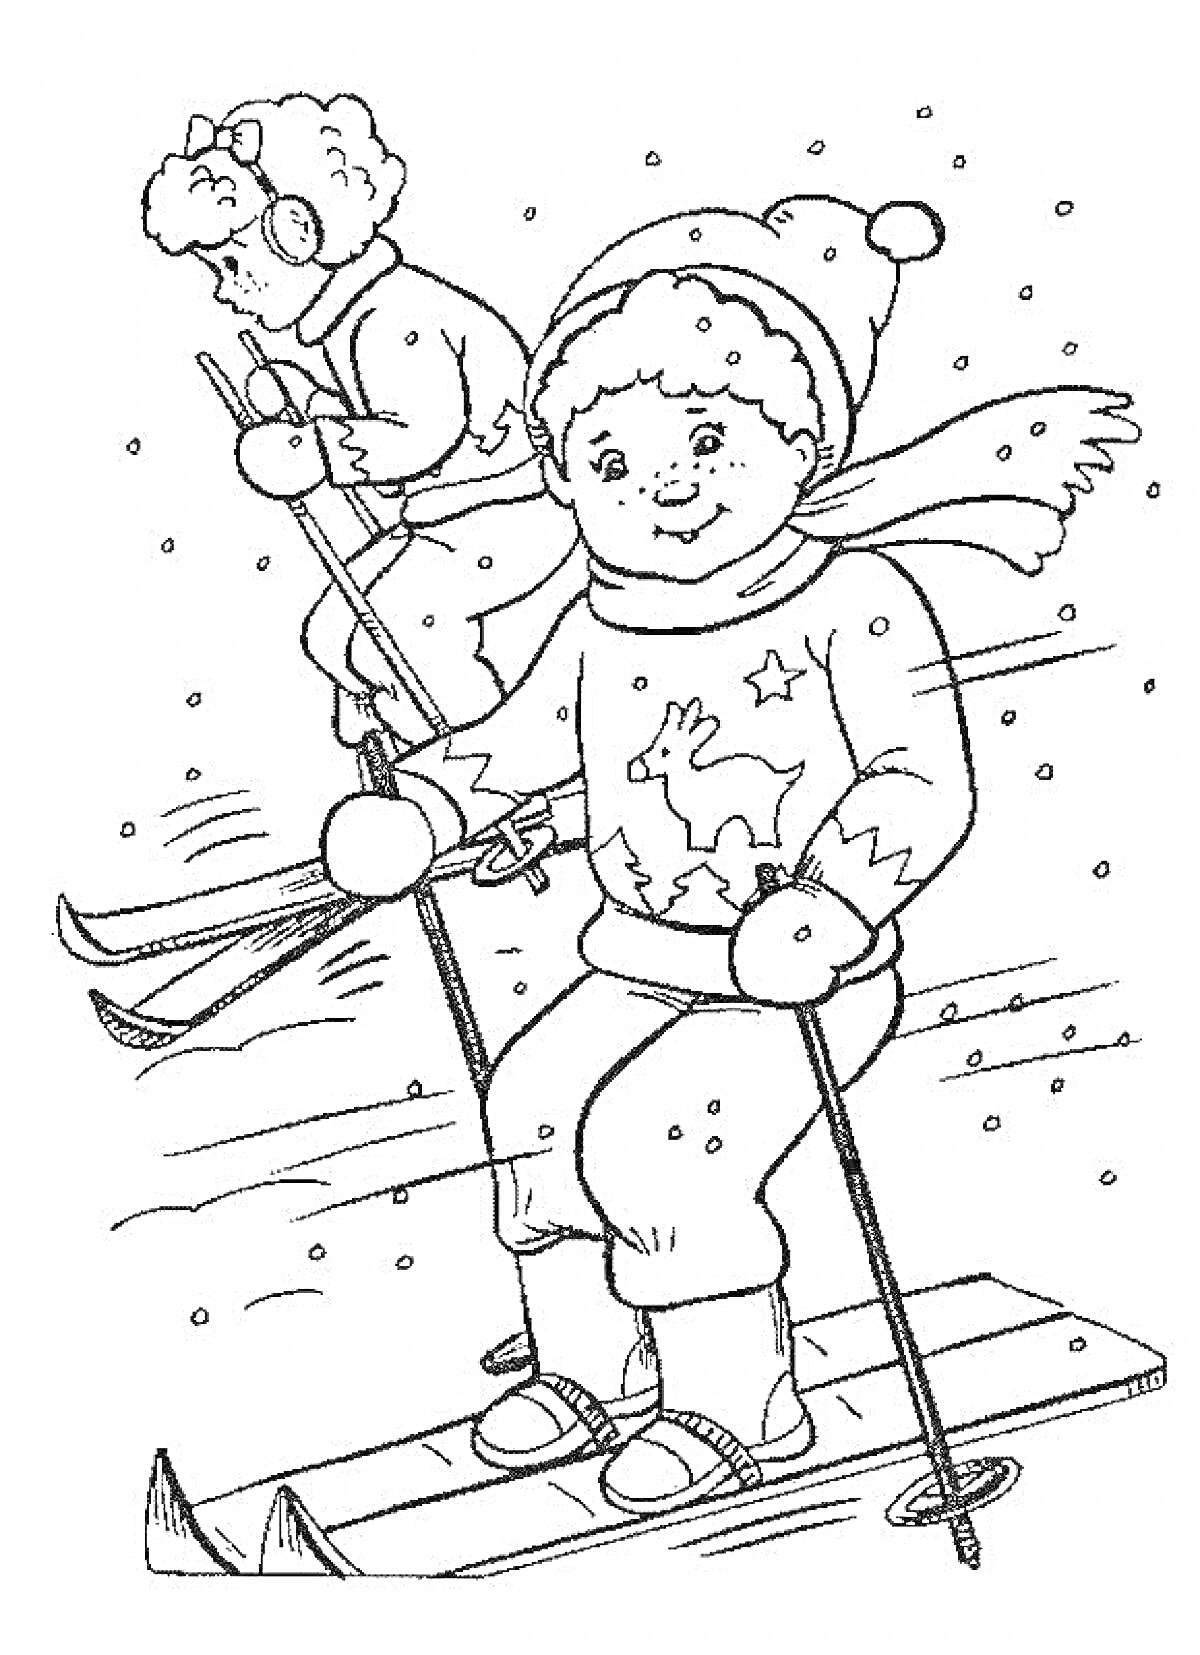 Раскраска Мальчики на лыжах среди снегопада - один в шапке и шарфе с оленем на свитере, второй в шапке и мохнатых наушниках